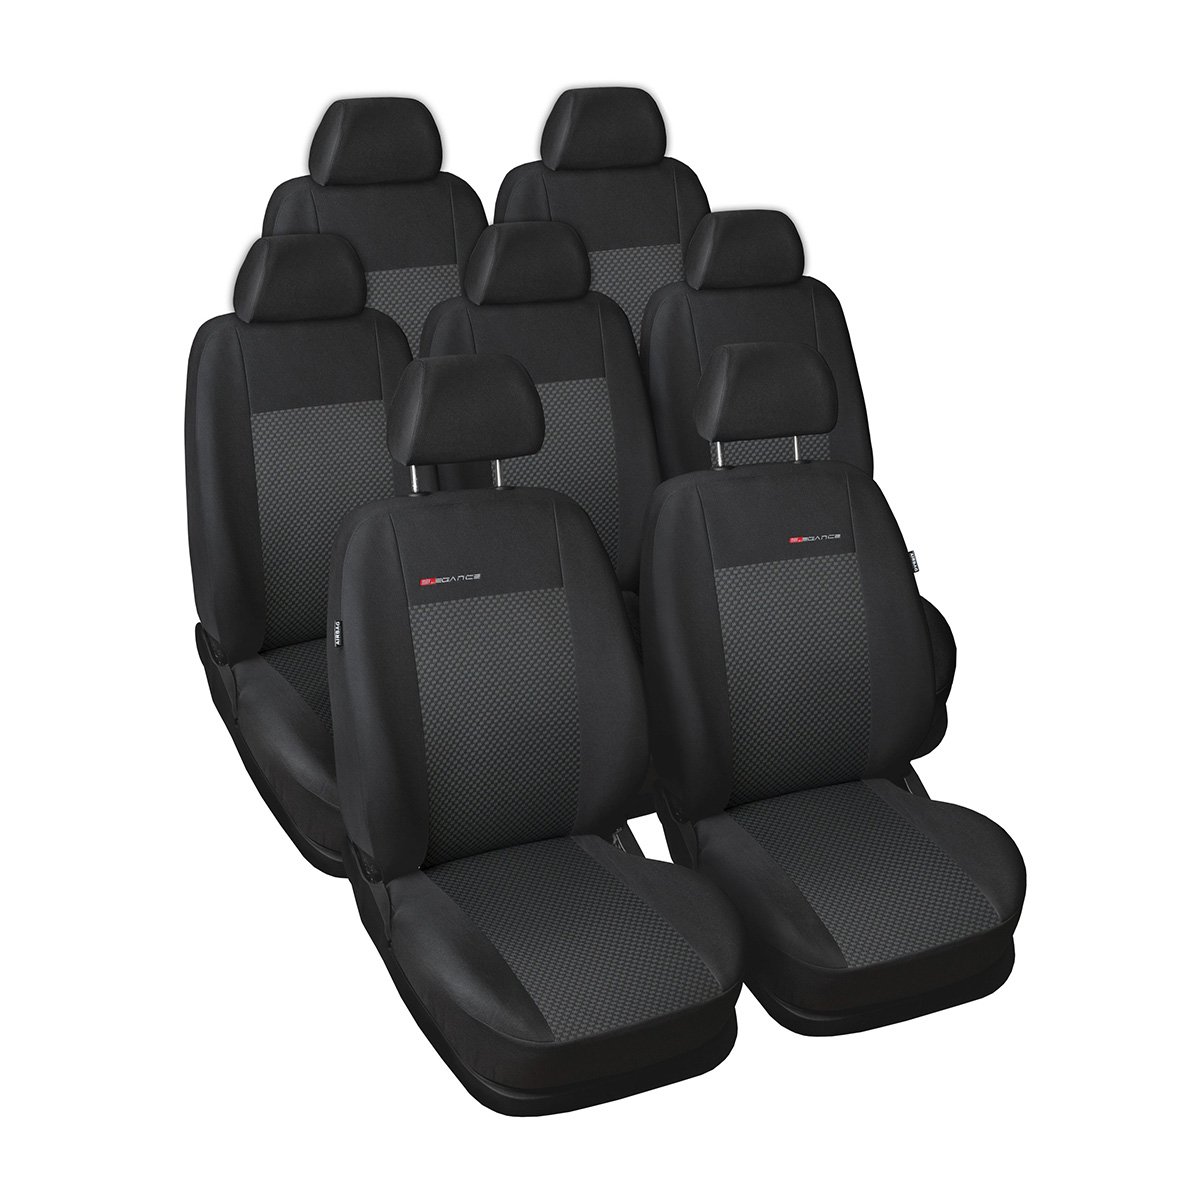 Mossa - Maßgeschneiderte Sitzbezüge Auto kompatibel mit Ford Galaxy III MPV (2006-2015) - Autositzbezüge Schonbezüge für Autositze - E3 von Mossa